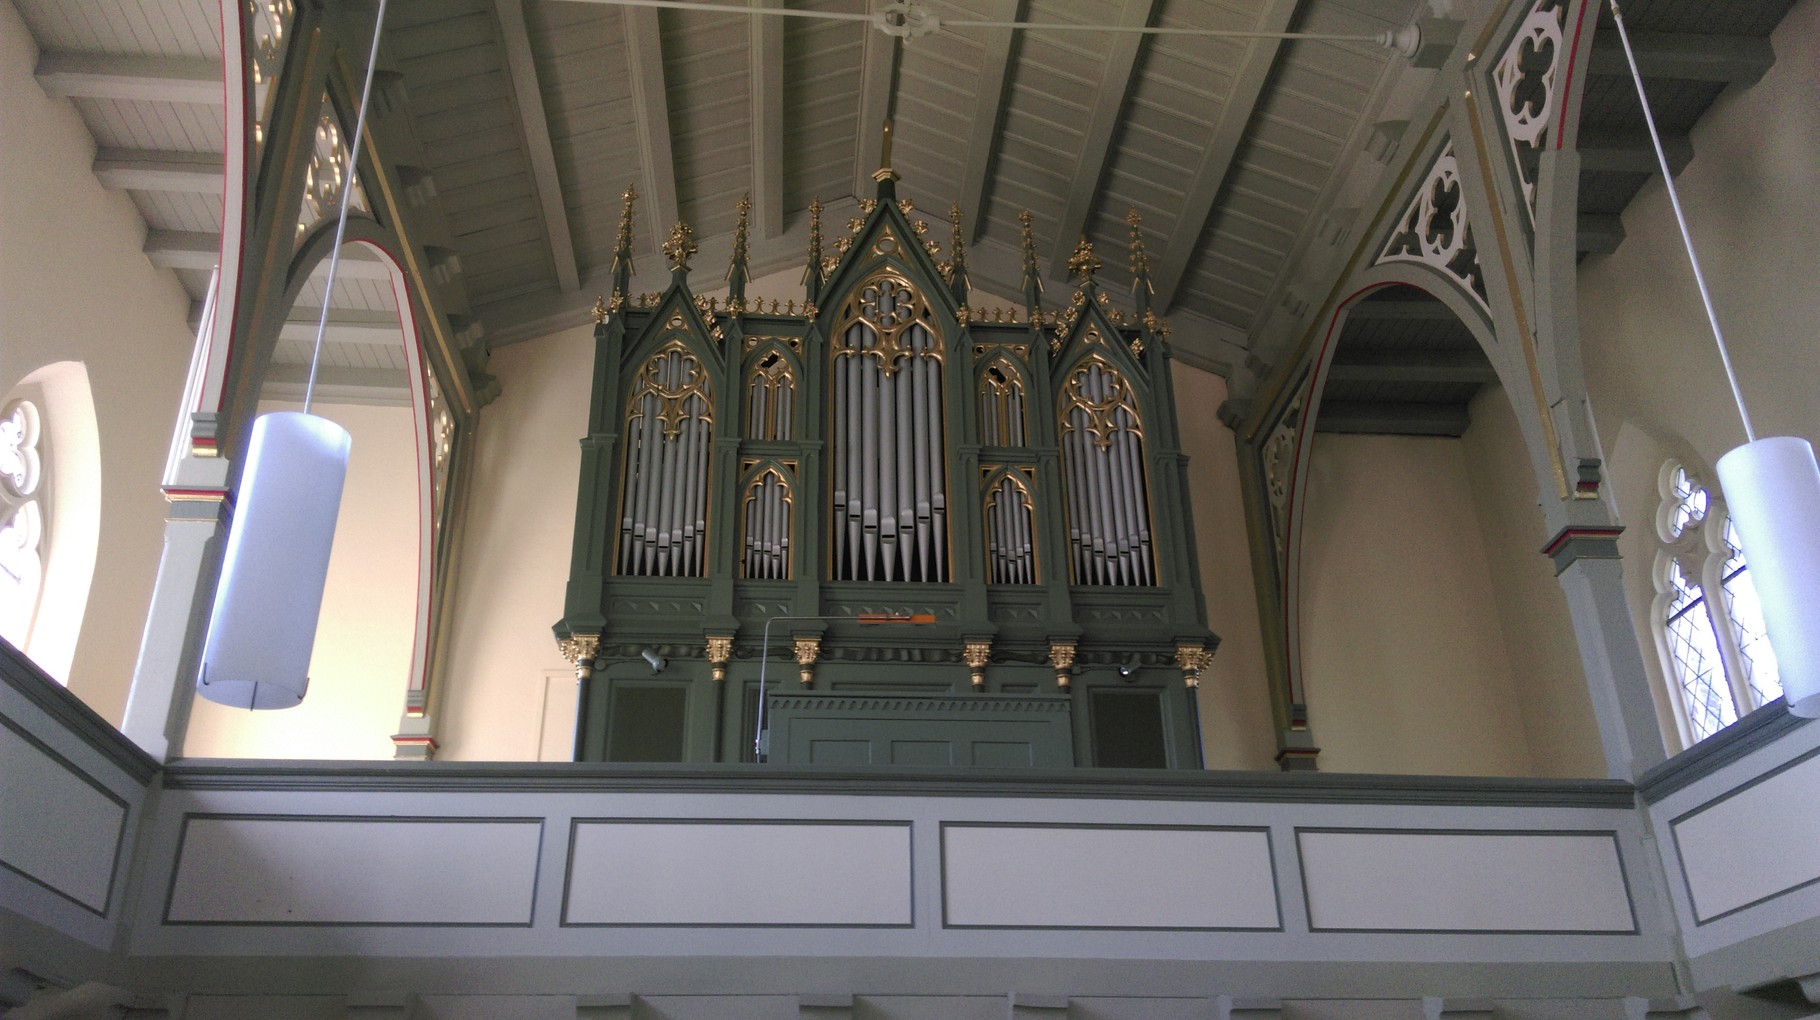 Rühlmann Orgel von 1880 in der Christuskirche Bobbau